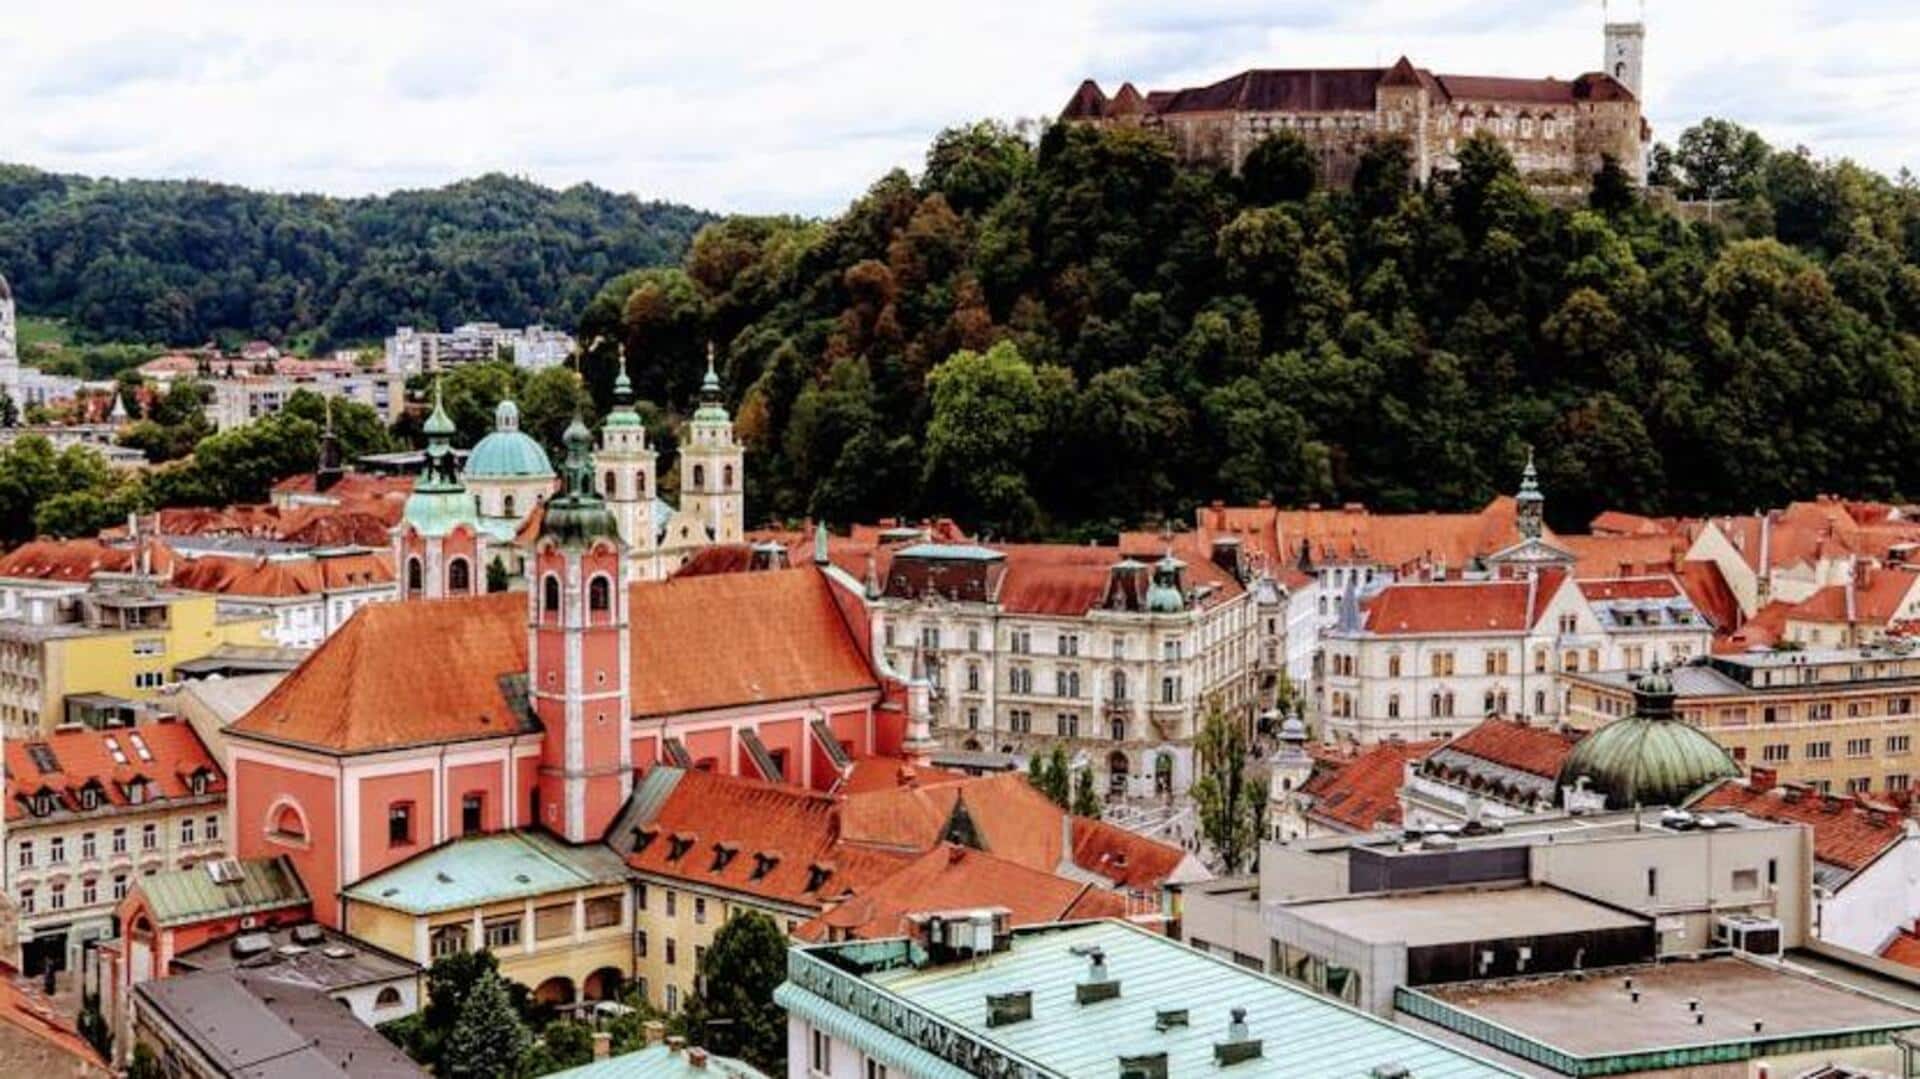 Exploring Ljubljana's medieval charms